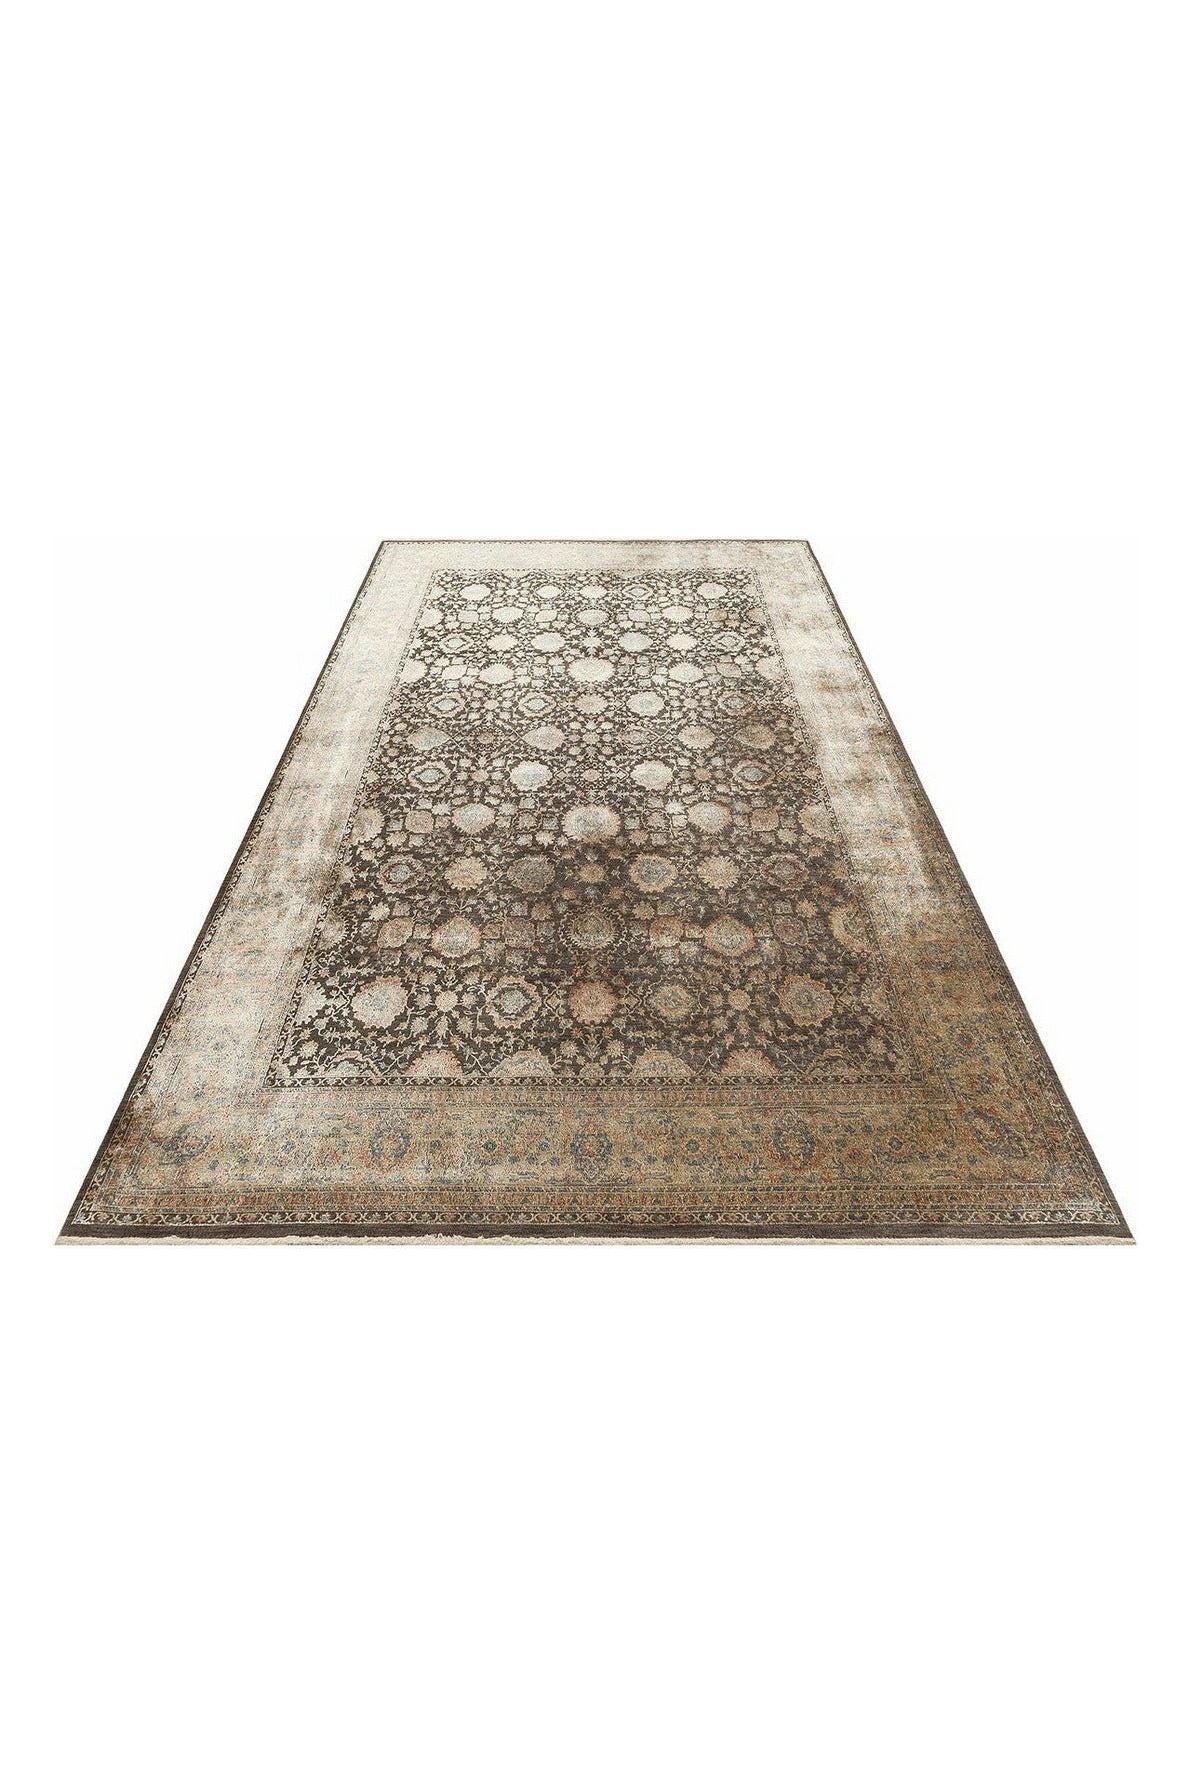 #Turkish_Carpets_Rugs# #Modern_Carpets# #Abrash_Carpets#Lhr 01 Olive